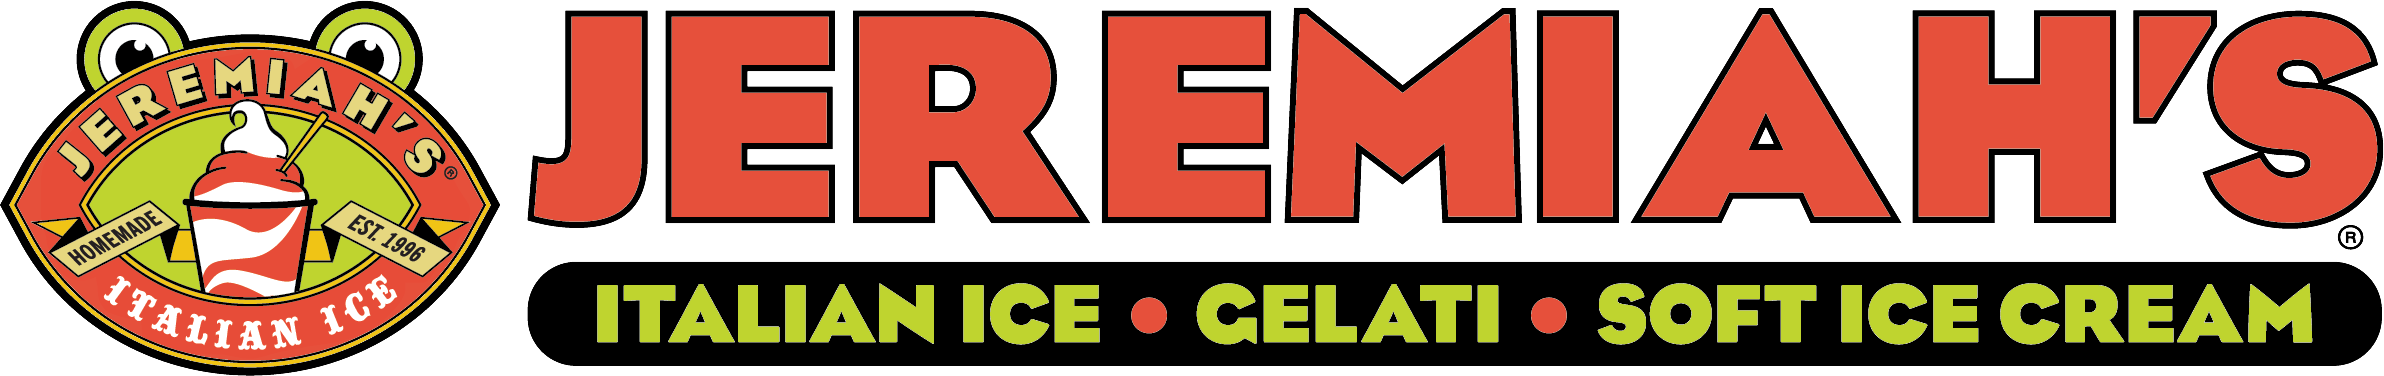 Jeremiah's Italian Ice Logoc